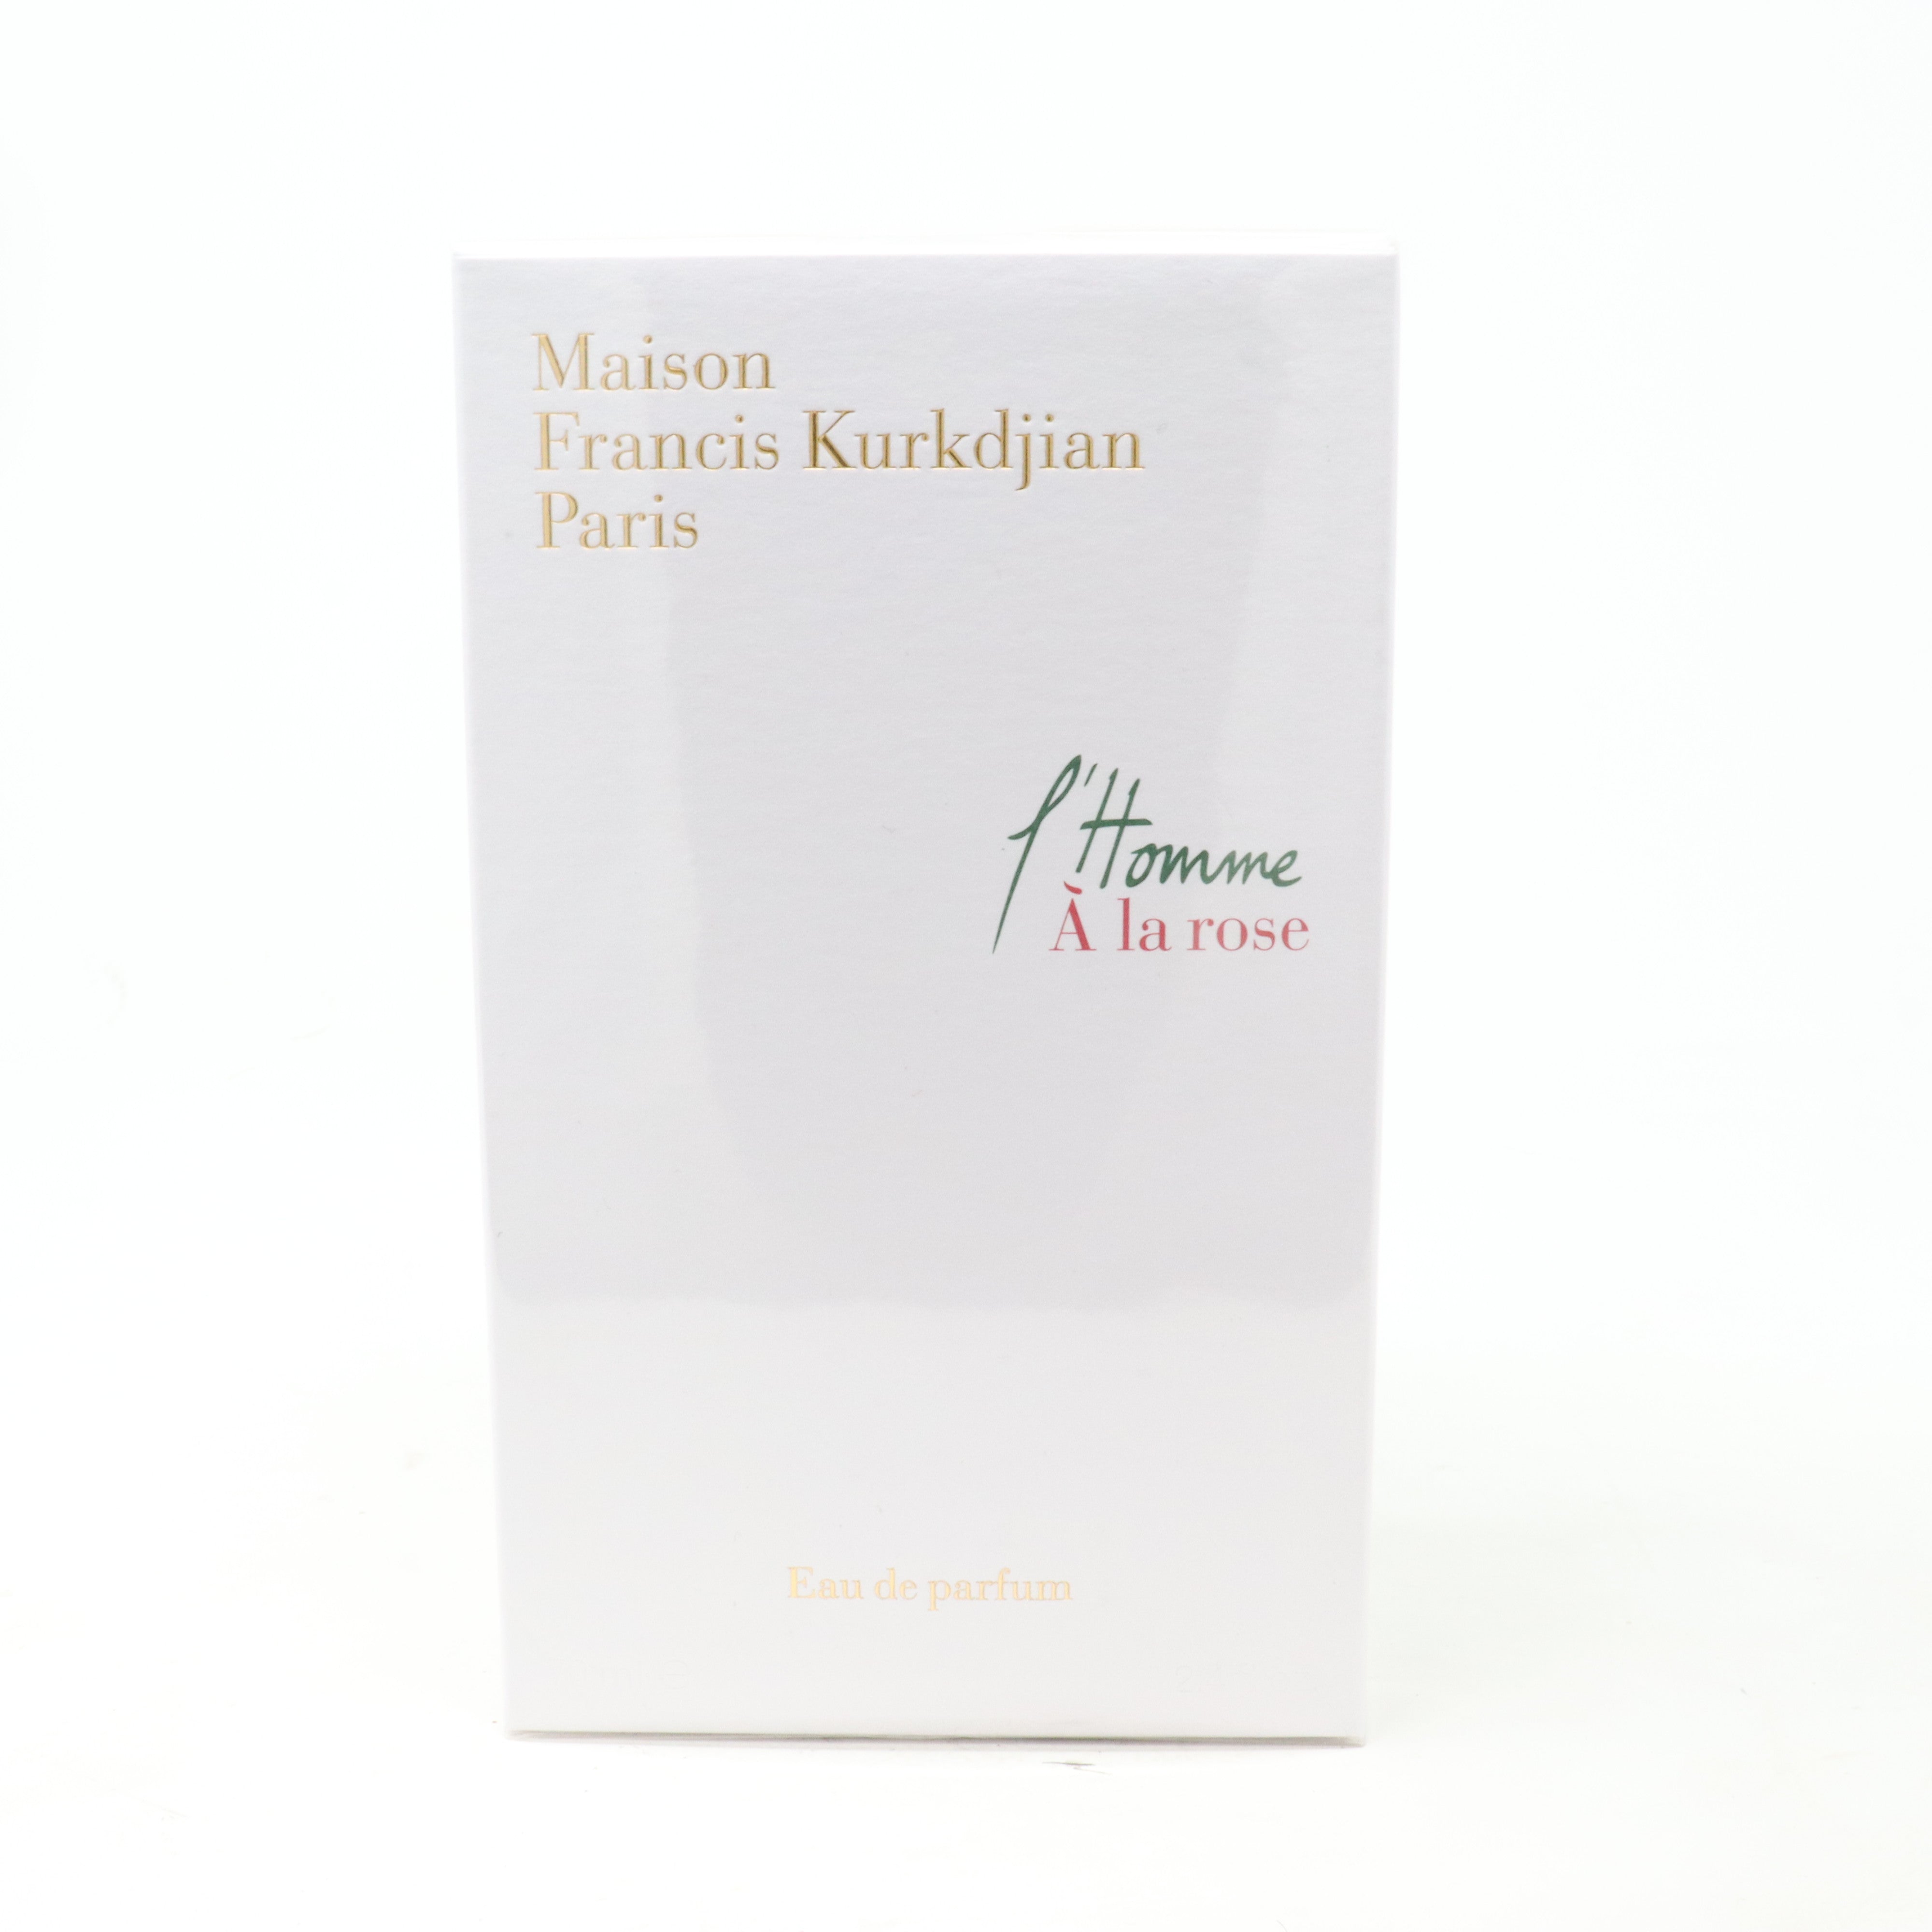 Maison Francis Kurkdjian 2.4 oz. L'Homme A La Rose Eau de Parfum